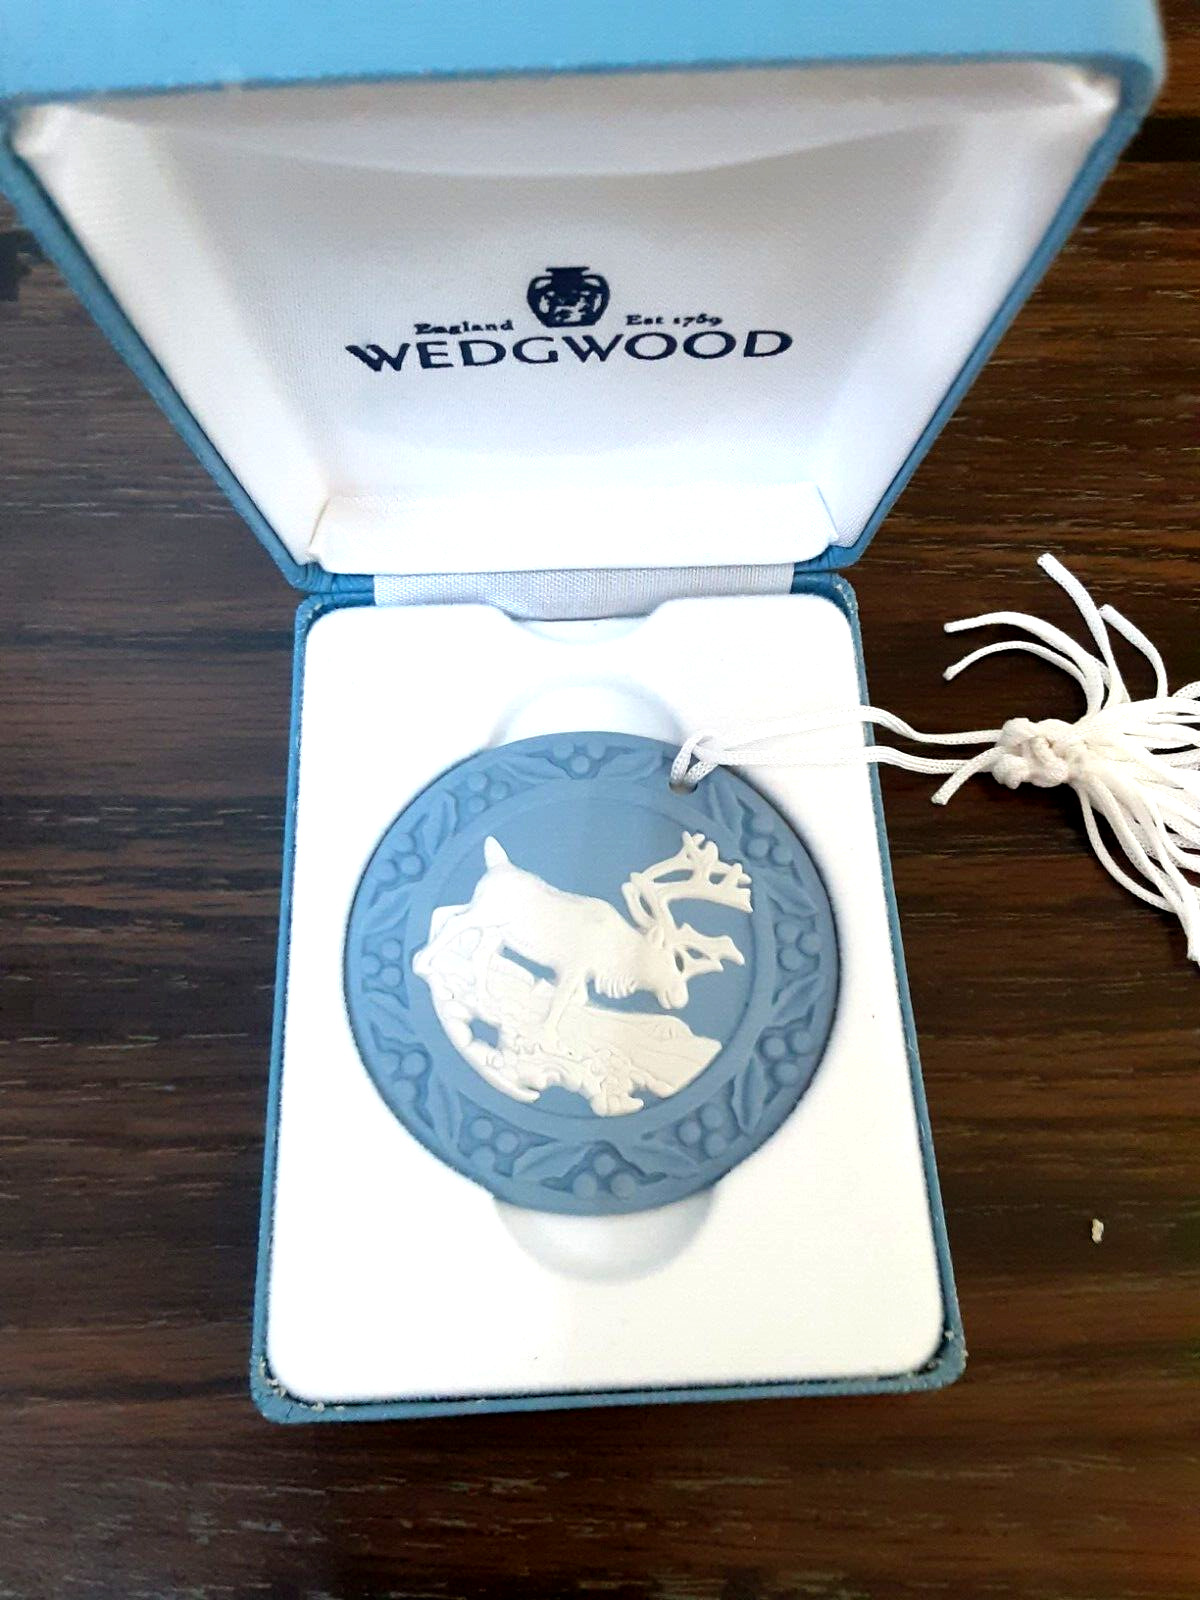 Wedgwood Est 1759 England Original Box Blue on Cream Medallion Rare